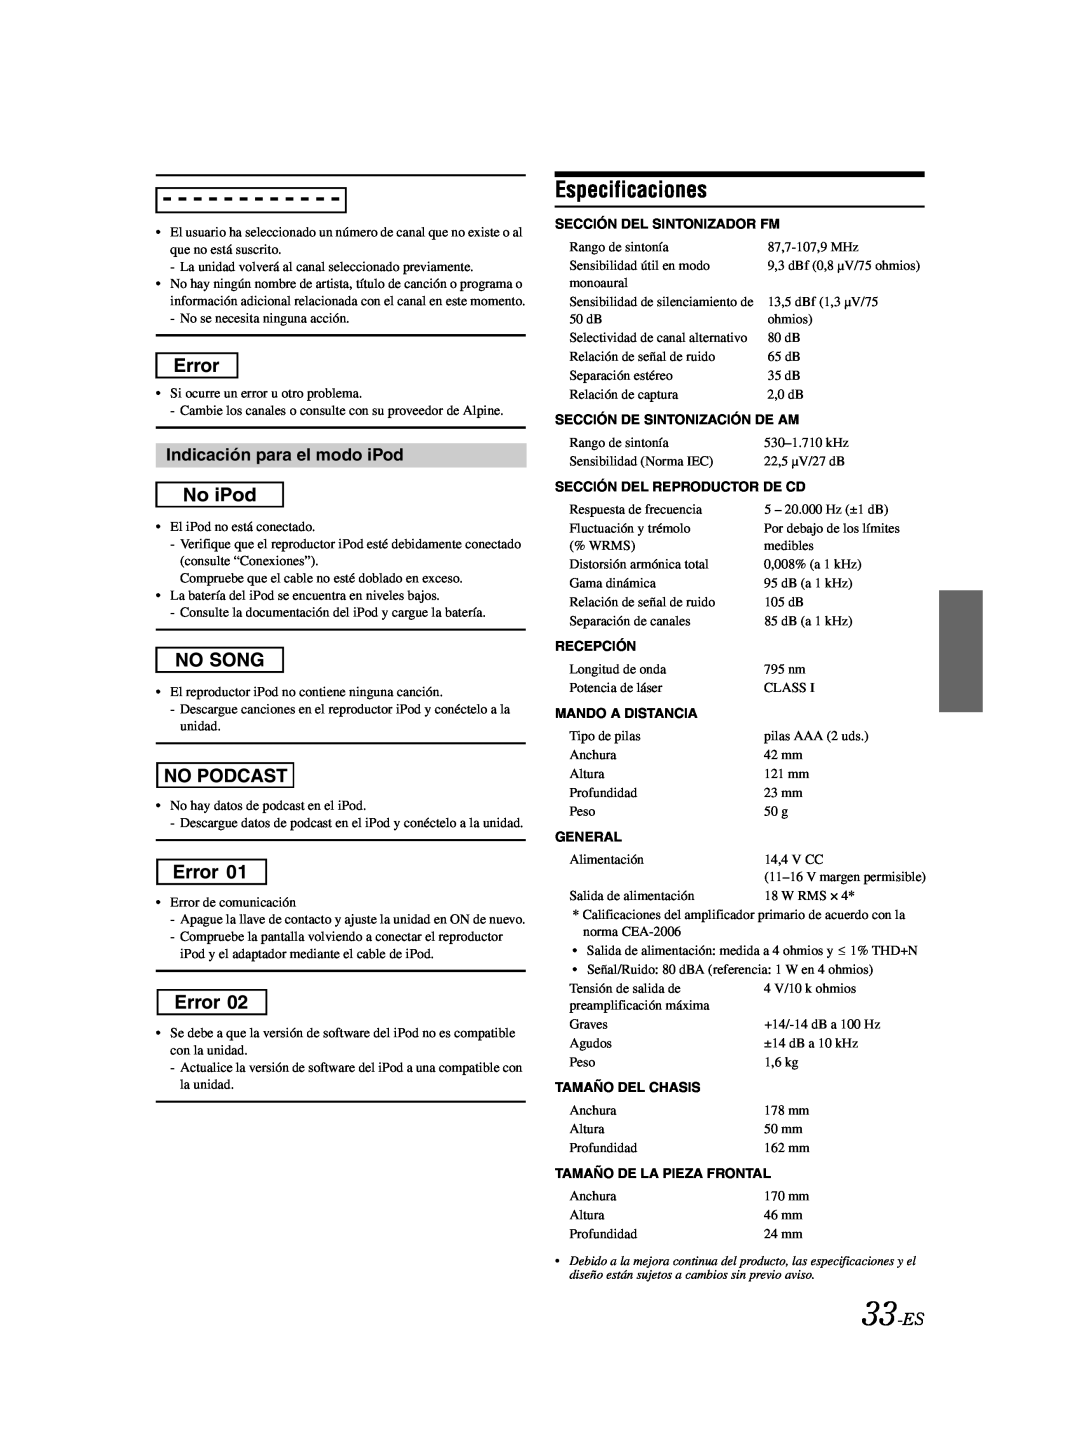 Alpine CDA-9885 owner manual Especificaciones, Indicación para el modo iPod, 33-ES 